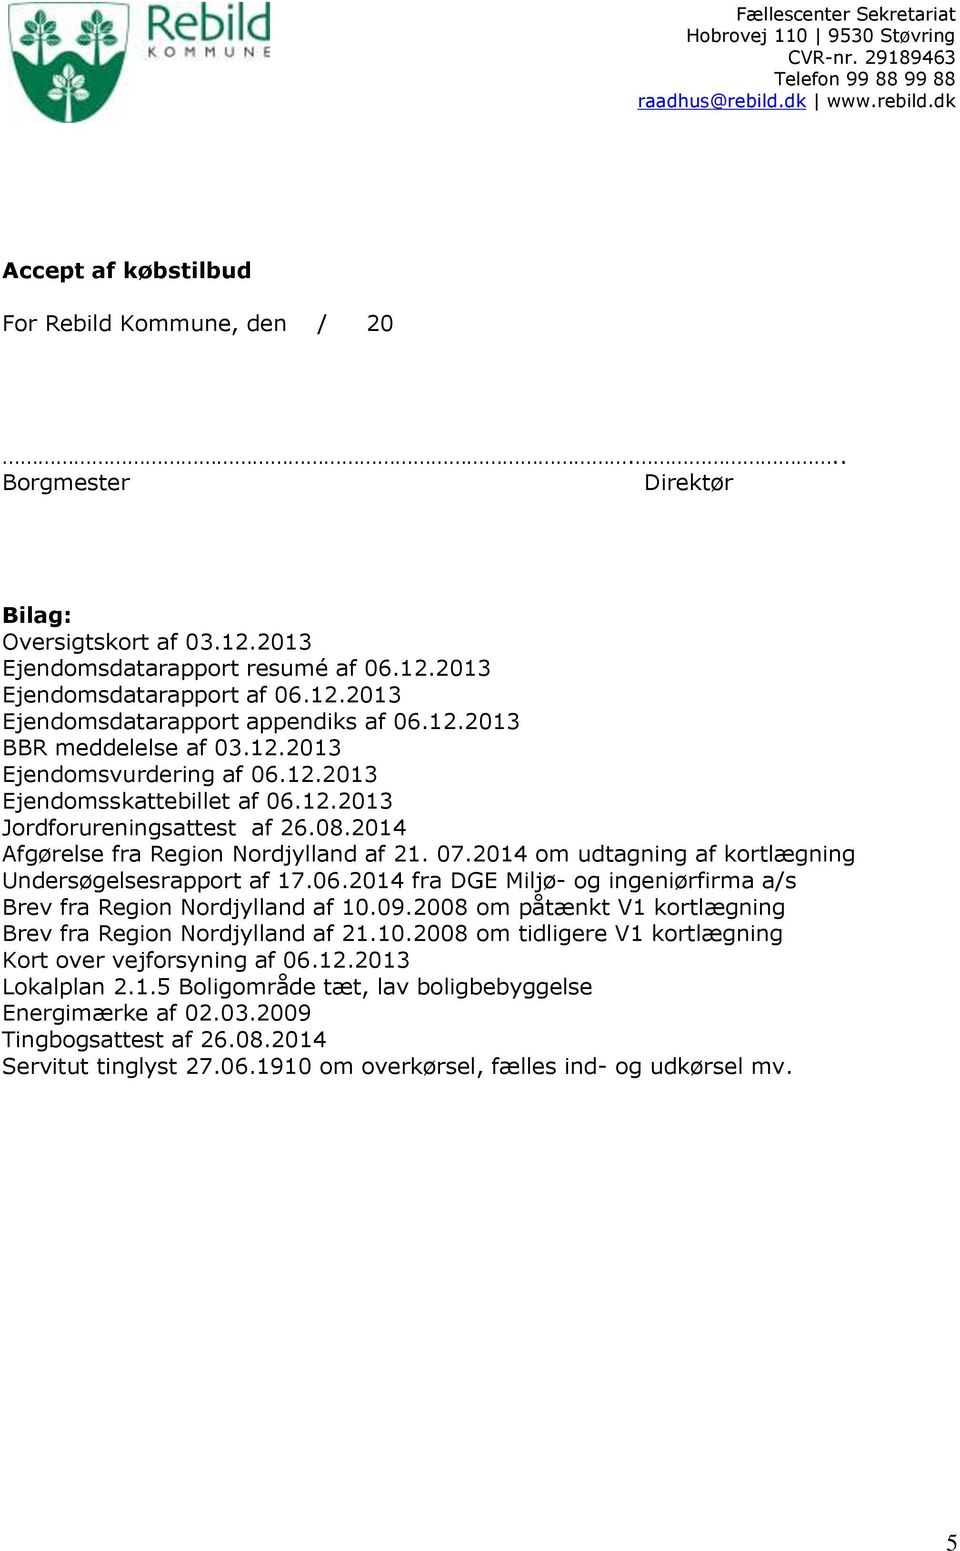 2014 om udtagning af kortlægning Undersøgelsesrapport af 17.06.2014 fra DGE Miljø- og ingeniørfirma a/s Brev fra Region Nordjylland af 10.09.